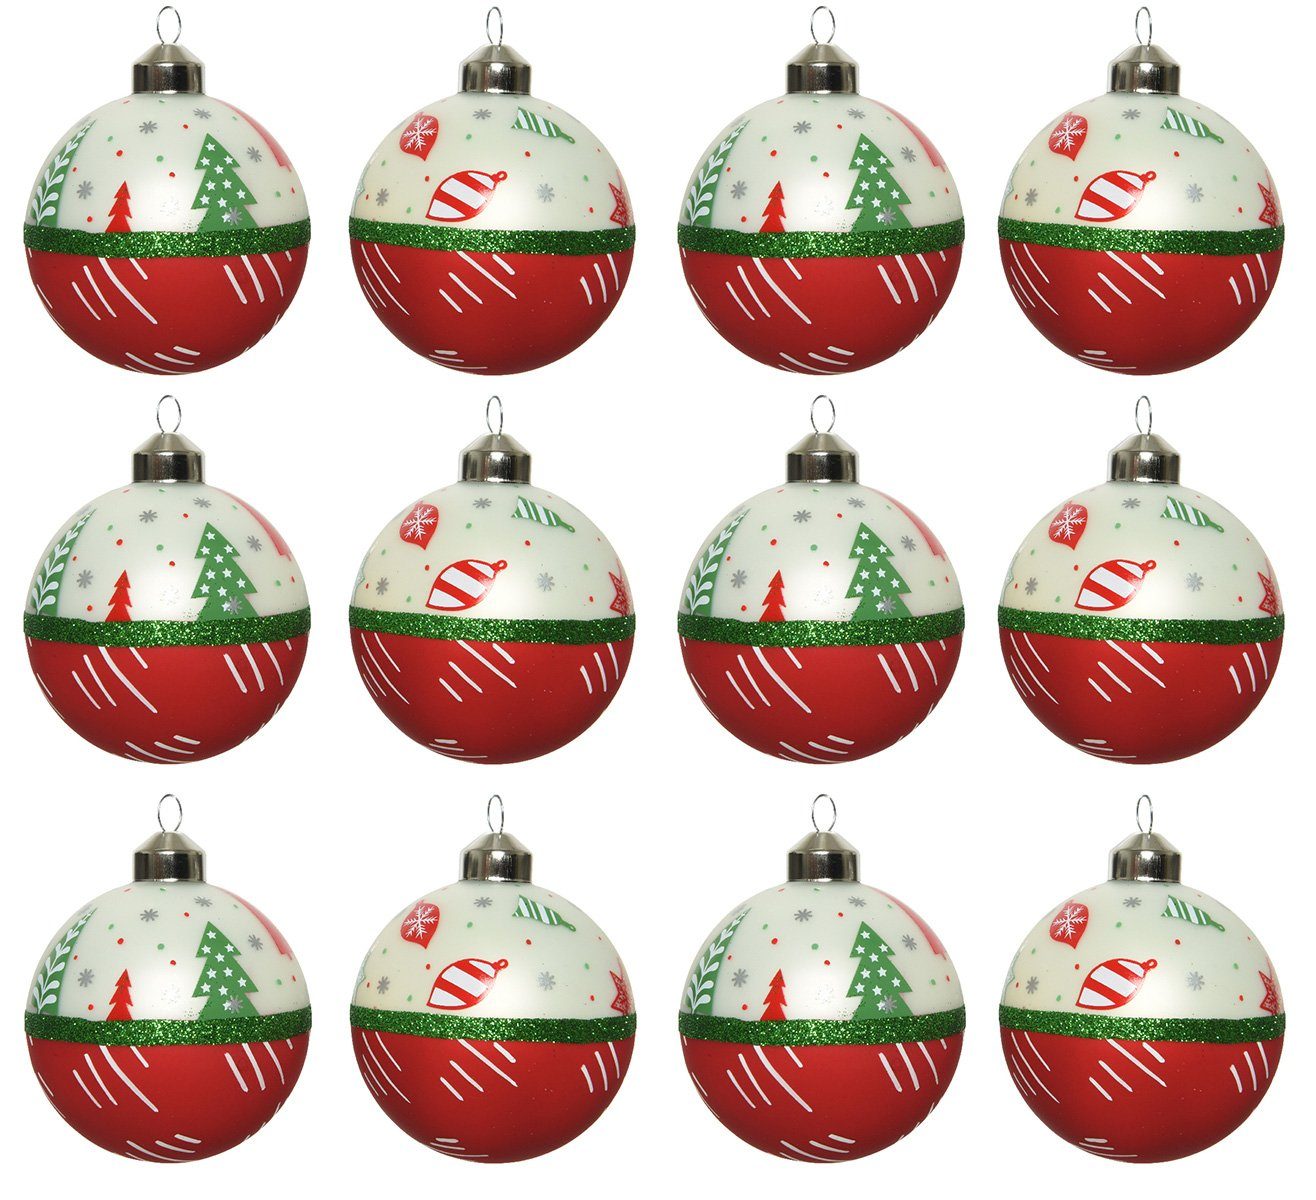 season grün Glas weiß Muster rot Weihnachtsbaumkugel, / Decoris decorations Set 12er Motiv / 8cm Weihnachtskugeln /